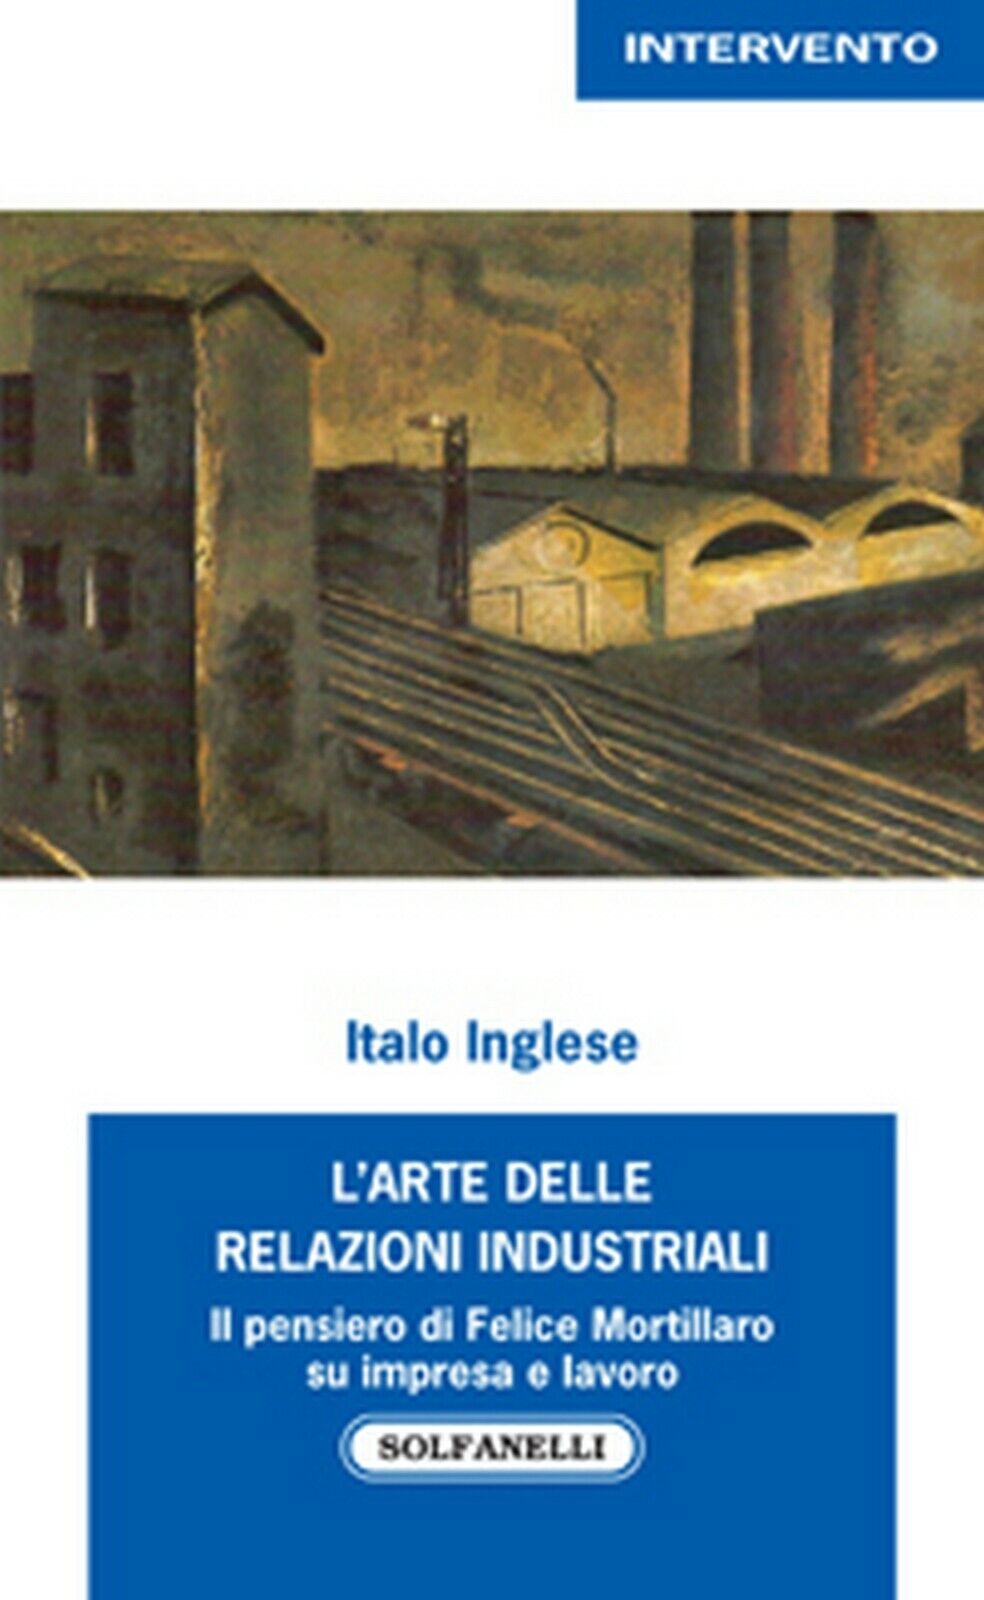 L'ARTE DELLE RELAZIONI INDUSTRIALI  di Italo Inglese,  Solfanelli Edizioni